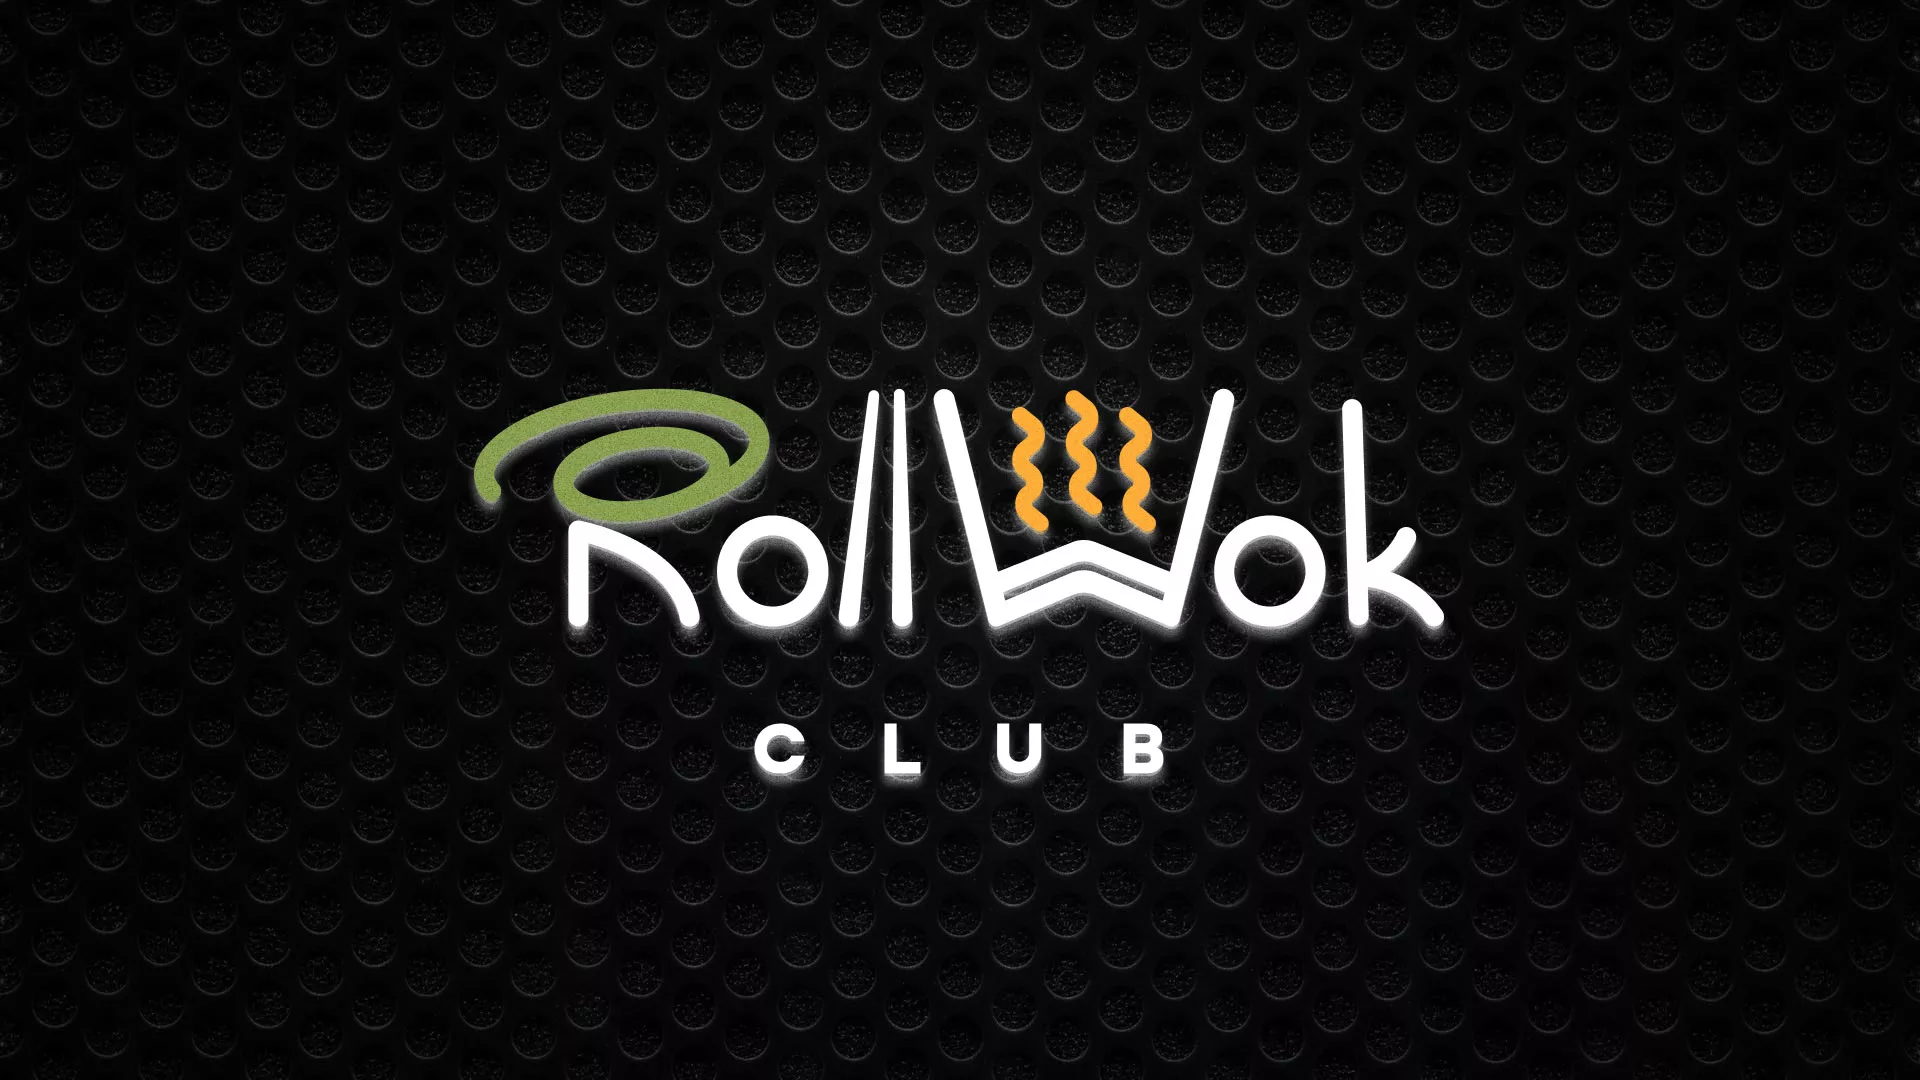 Брендирование торговых точек суши-бара «Roll Wok Club» в Новороссийске